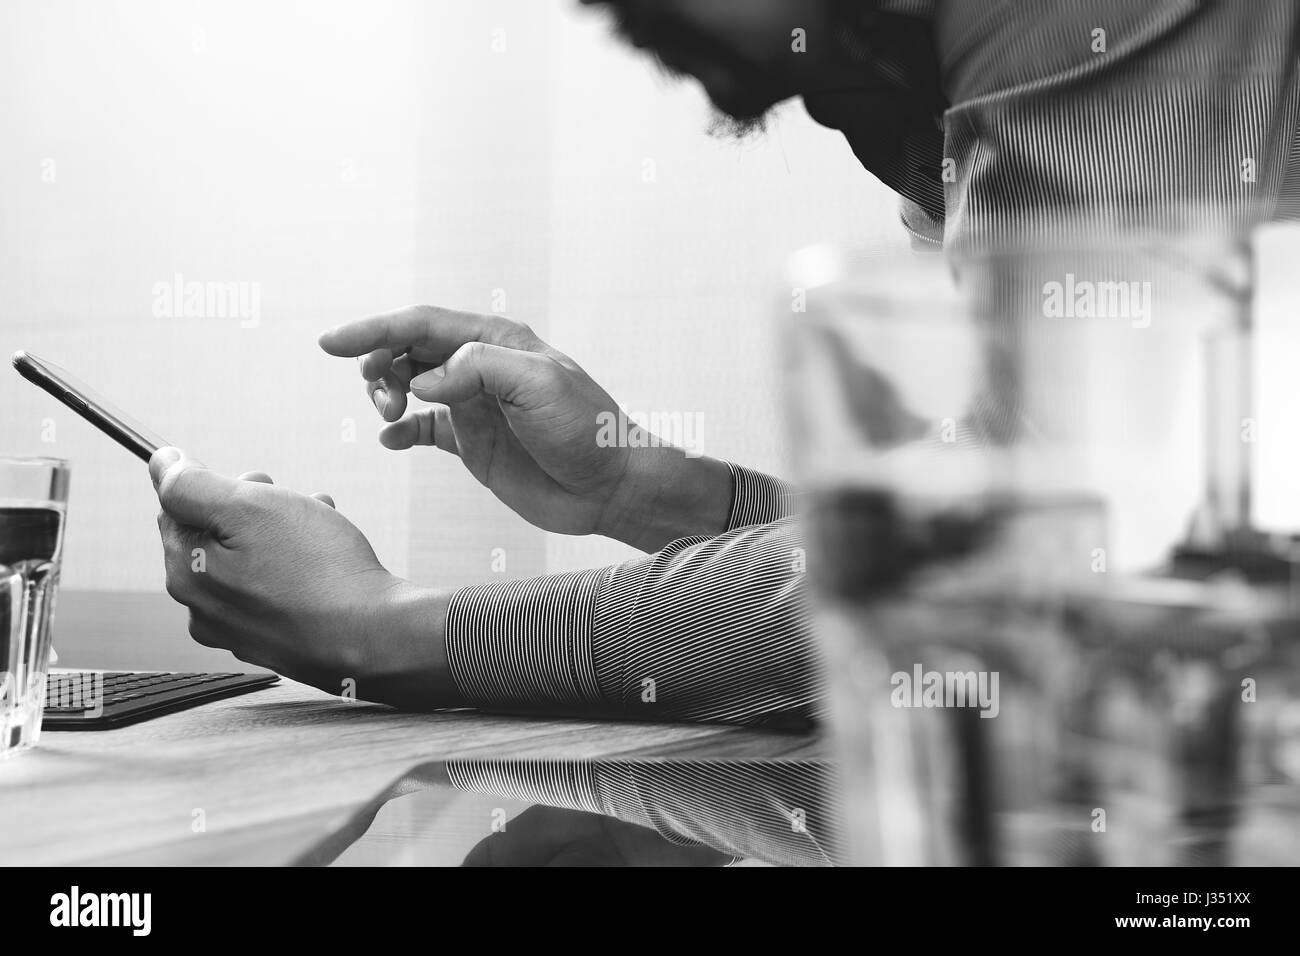 Businessman hand en utilisant les paiements mobiles,vente en ligne omni channel,ordinateur portable sur un bureau en bois blanc, noir Banque D'Images